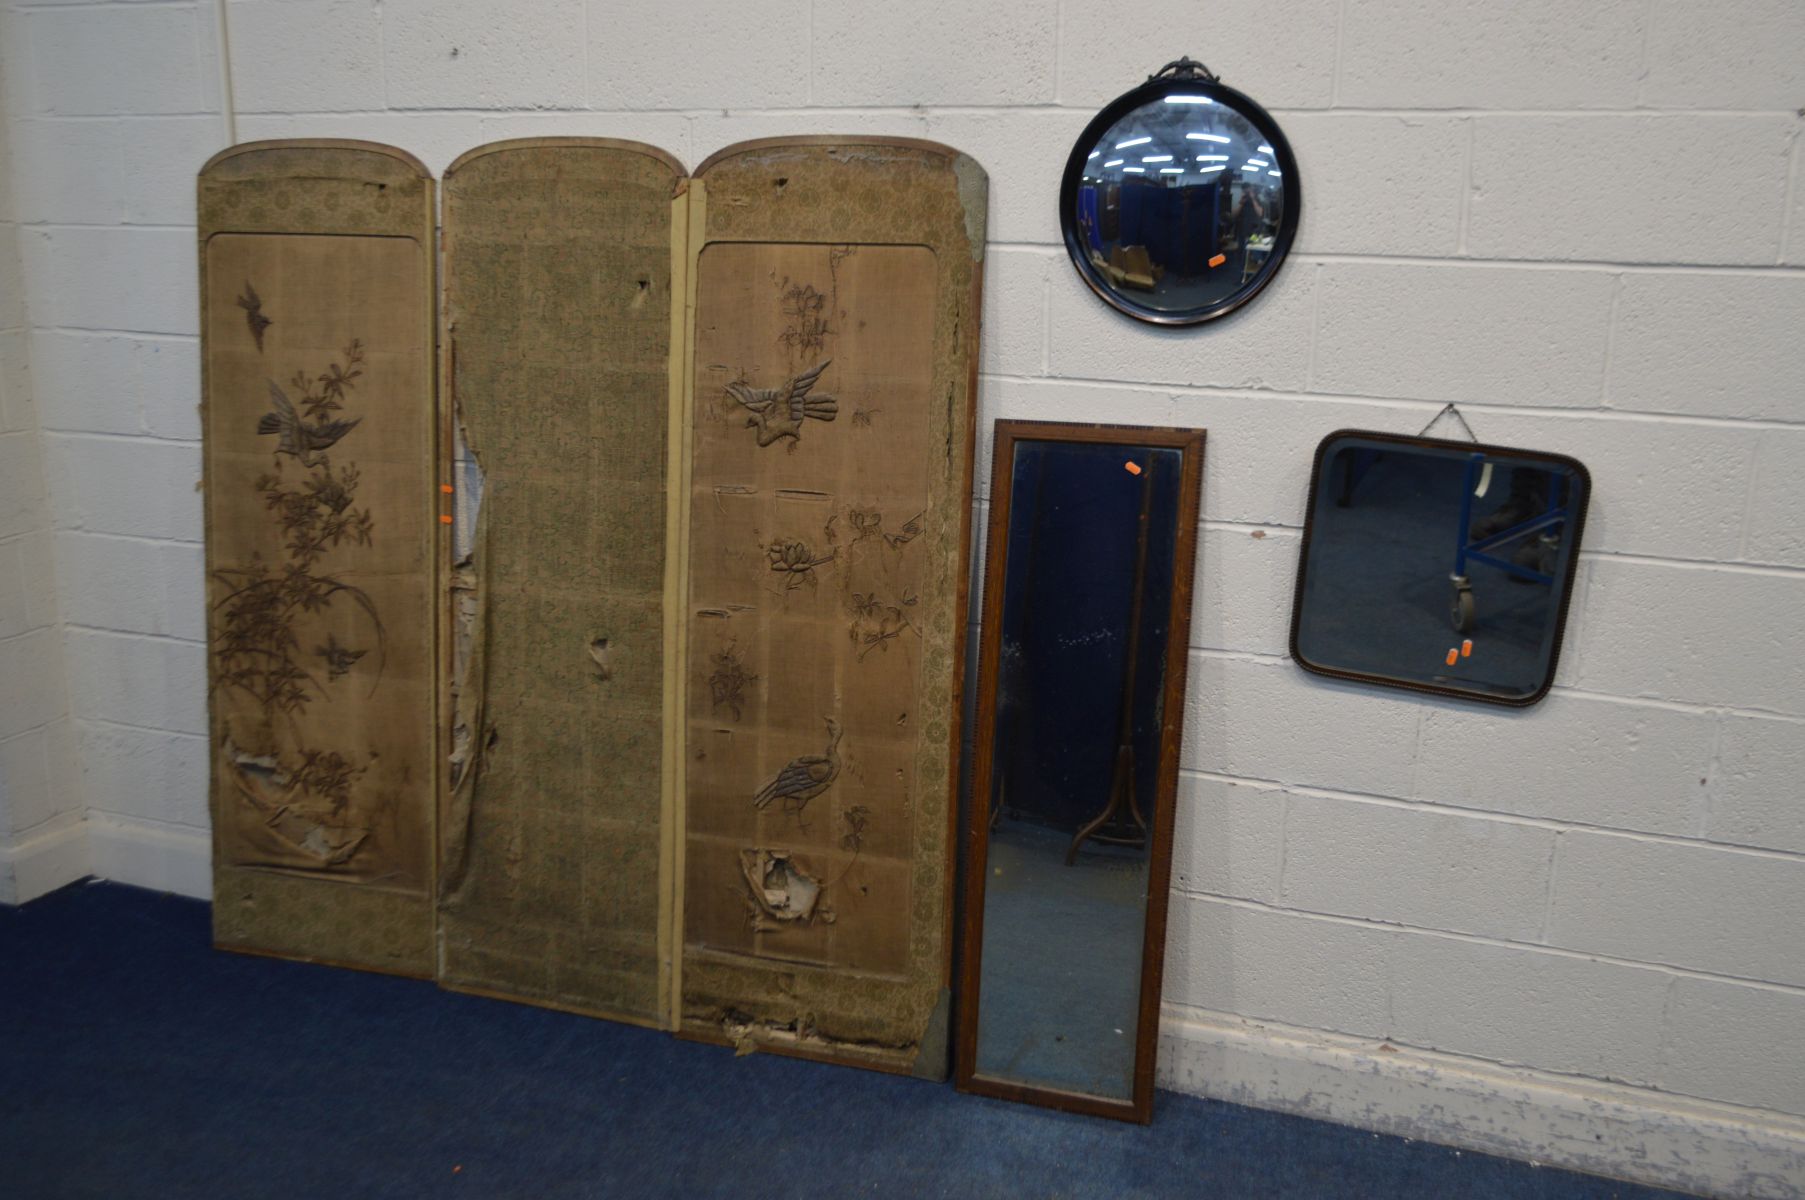 A DISTRESSED FABRIC THREE FOLD FLOORSTANDING SCREEN, along with an oak rectangular wall mirror, a